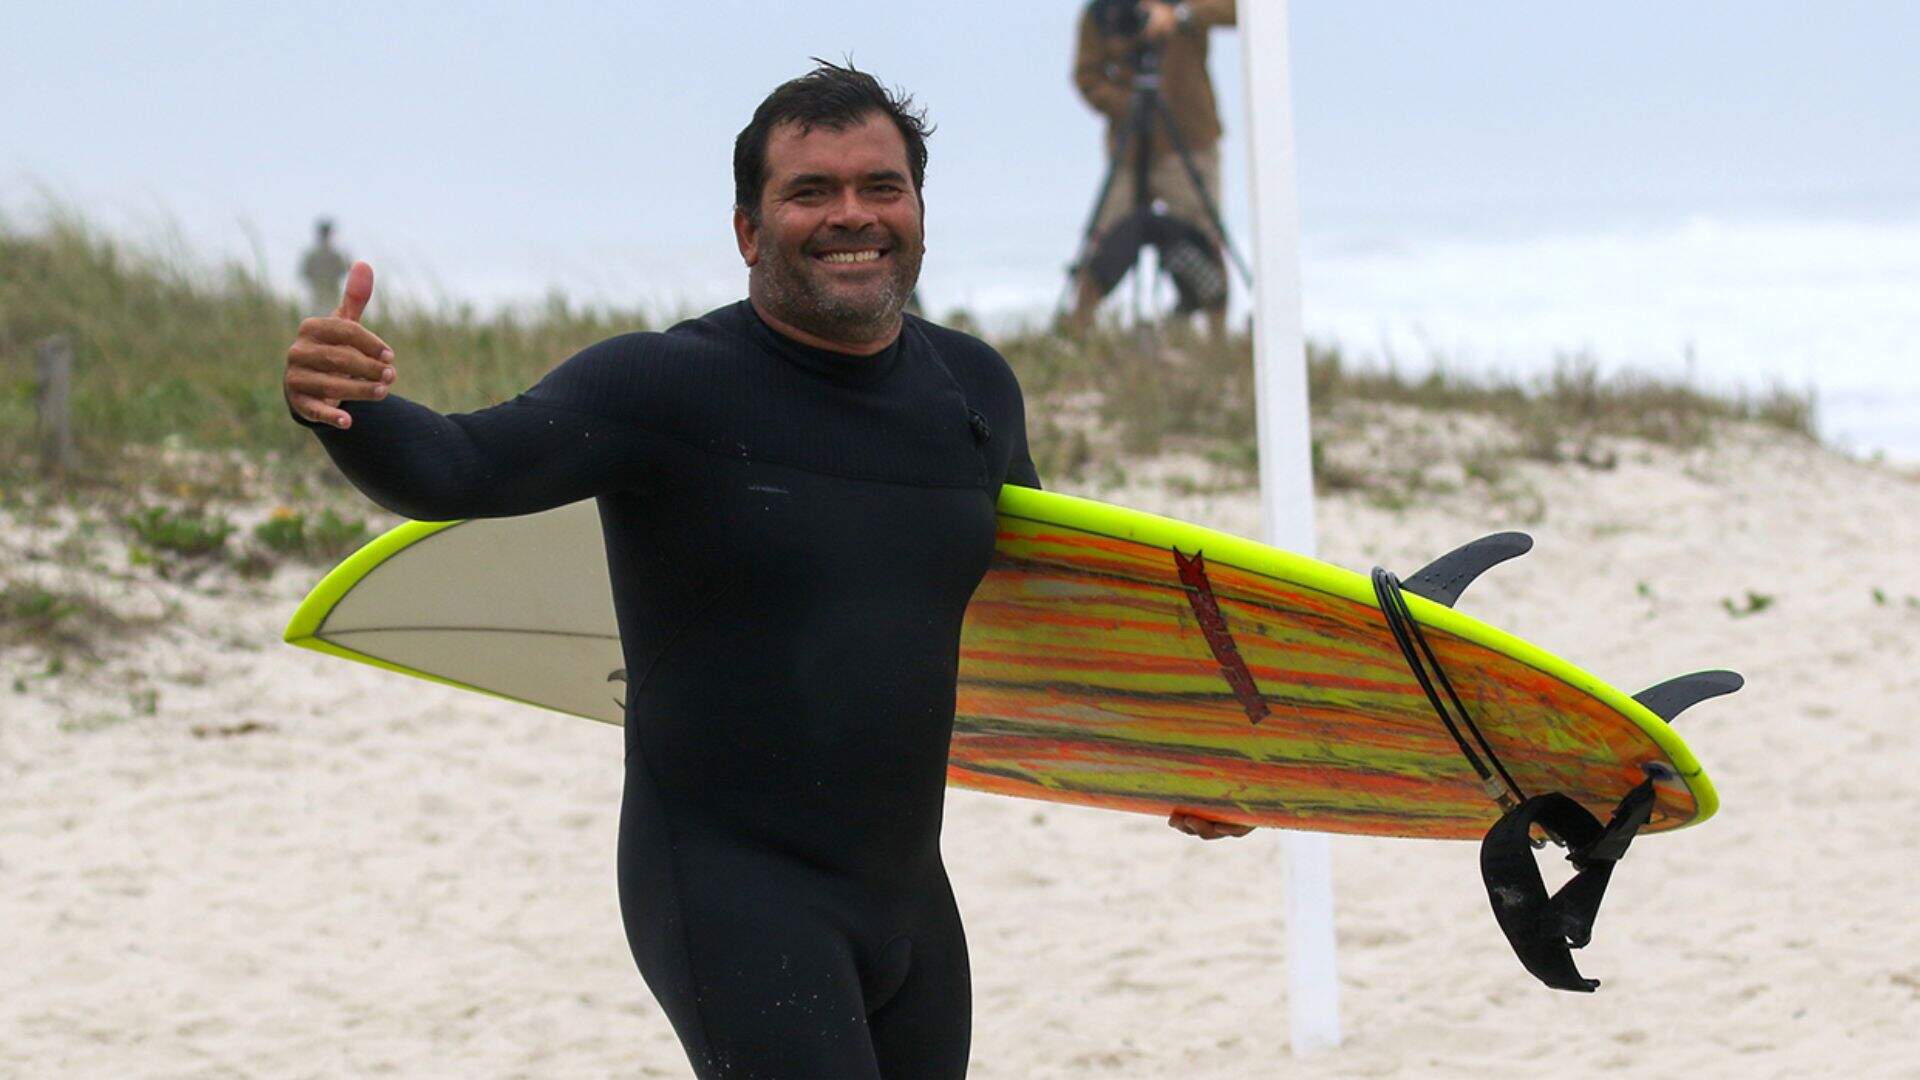 Morre surfista Marcio Freire, aos 47 anos, após queda em Nazaré